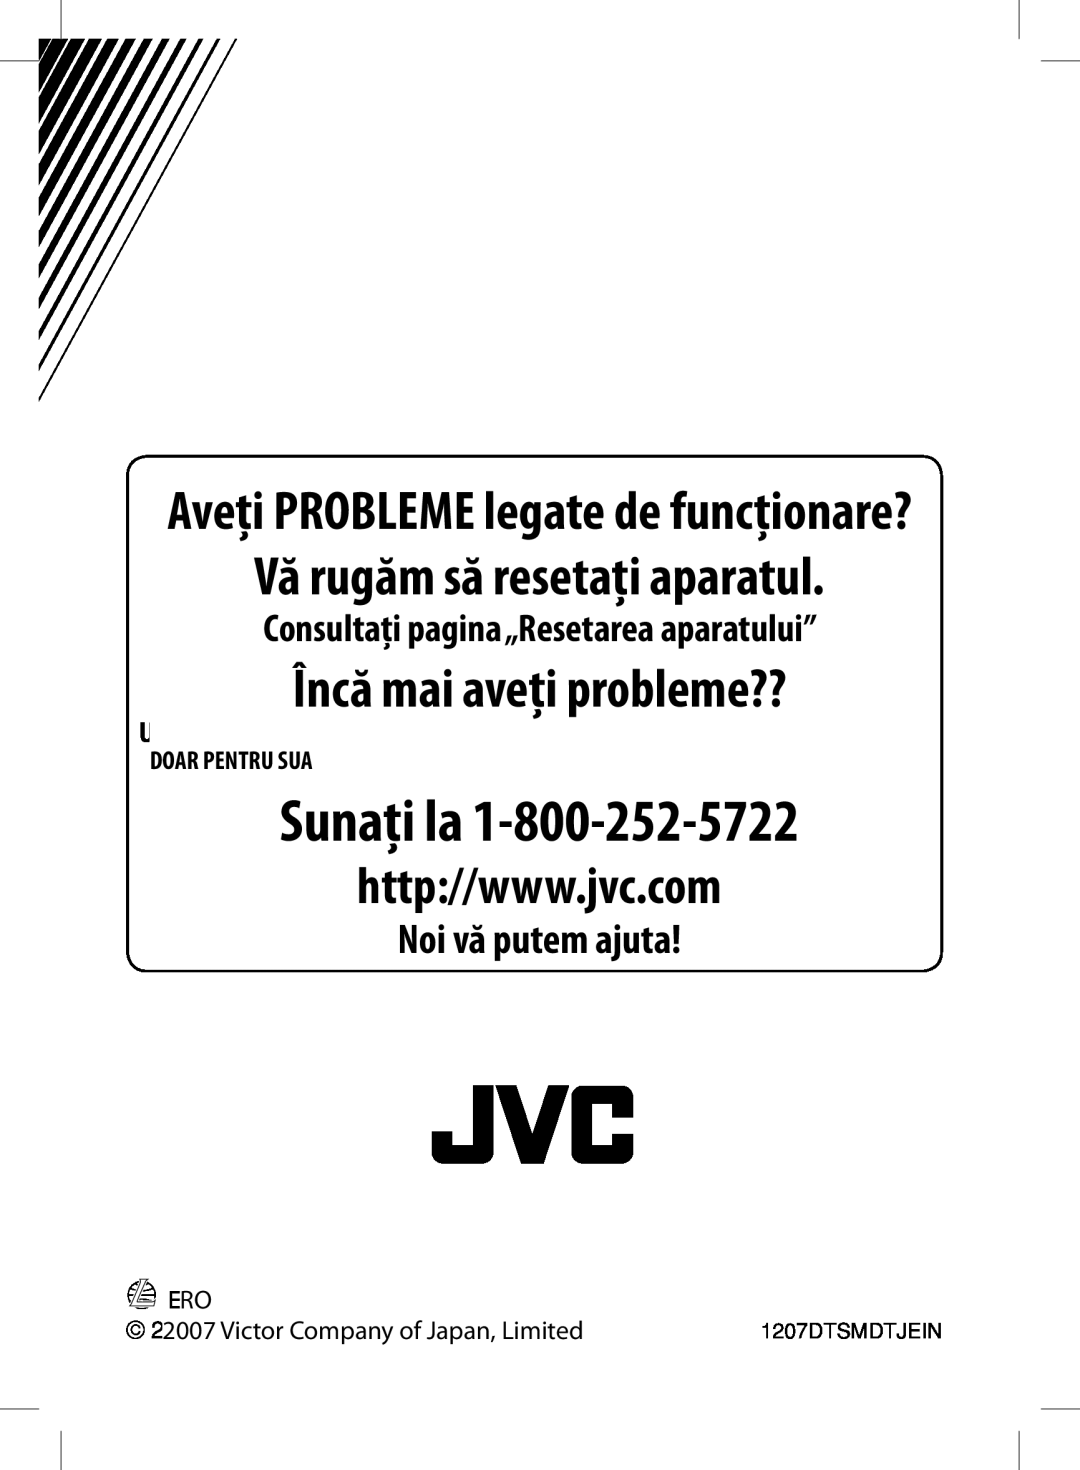 JVC KD-BT11 VăPleaserugăm săresetresetaţiyouraparatulunit, Usa Only, Doar Pentru Sua, Victor Company of Japan, Limited 